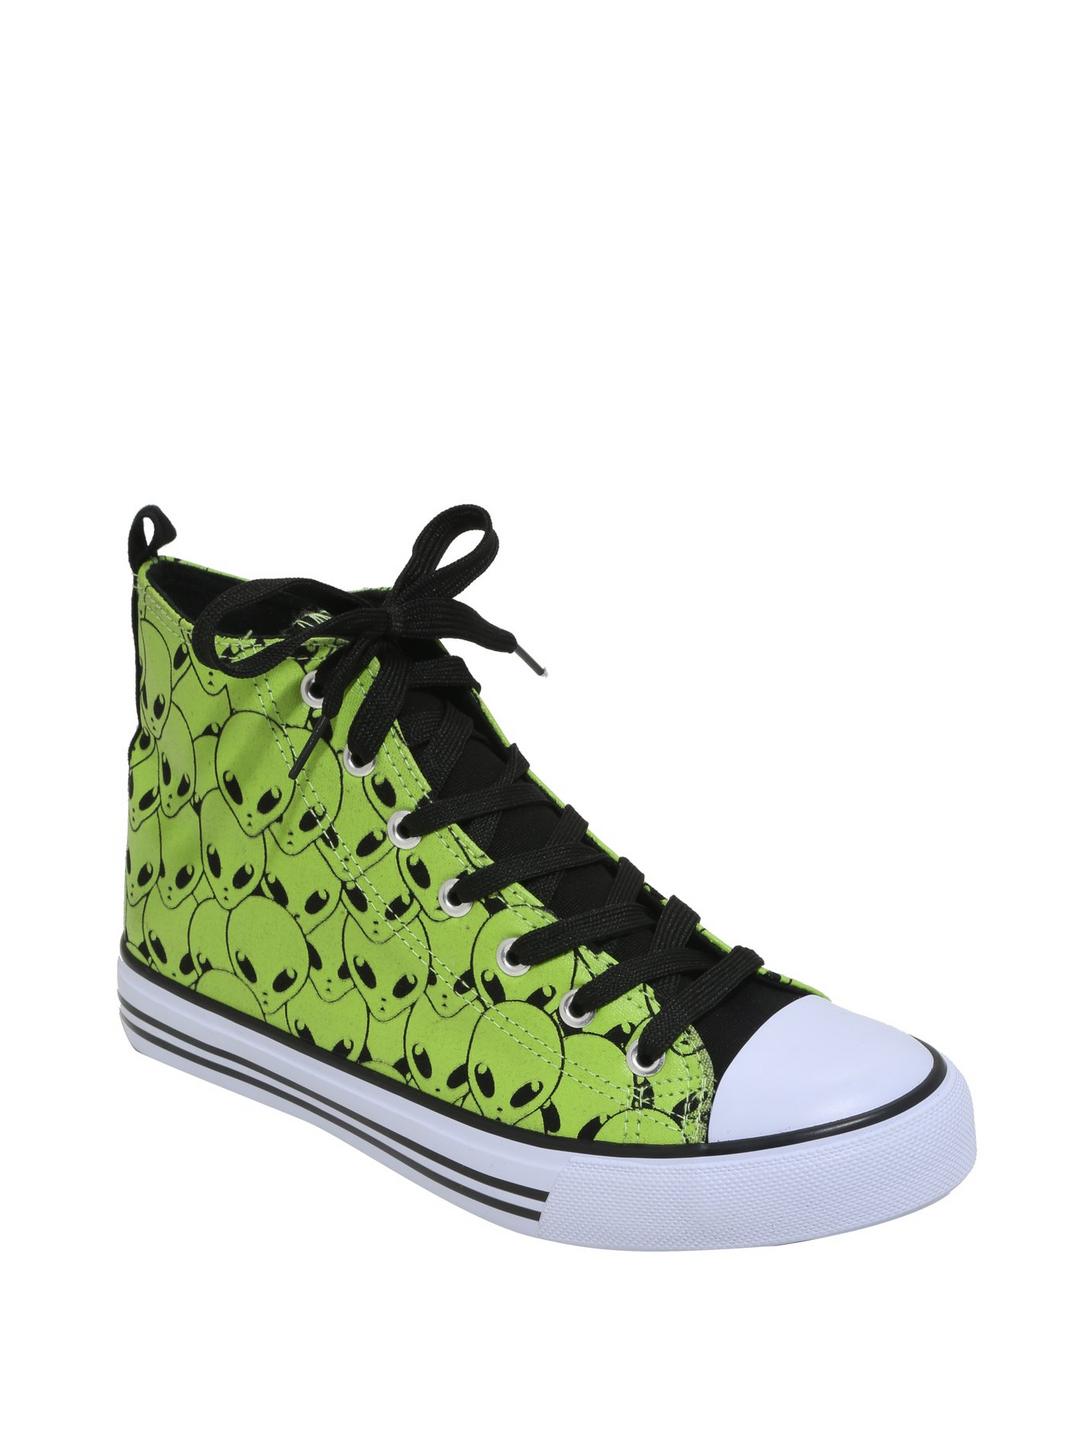 Green Alien Hi-Top Sneakers, GREEN, hi-res